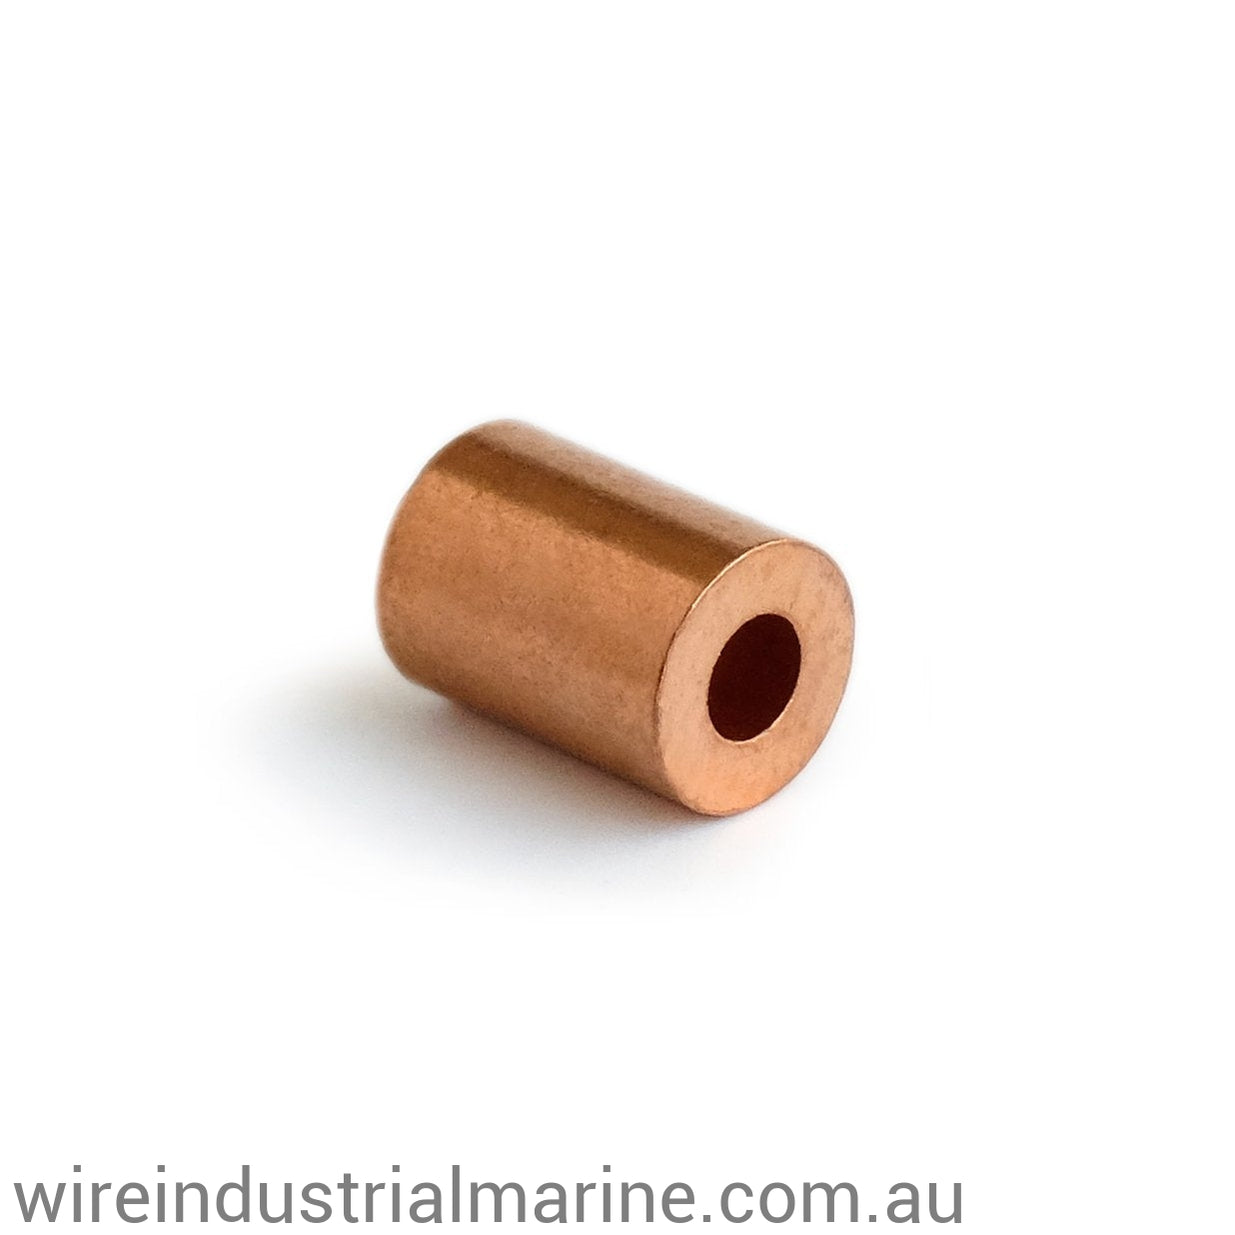 2mm COPPER ROUND-DIN Code machine press ferrule for stainless steel wire-wireindustrialmarine